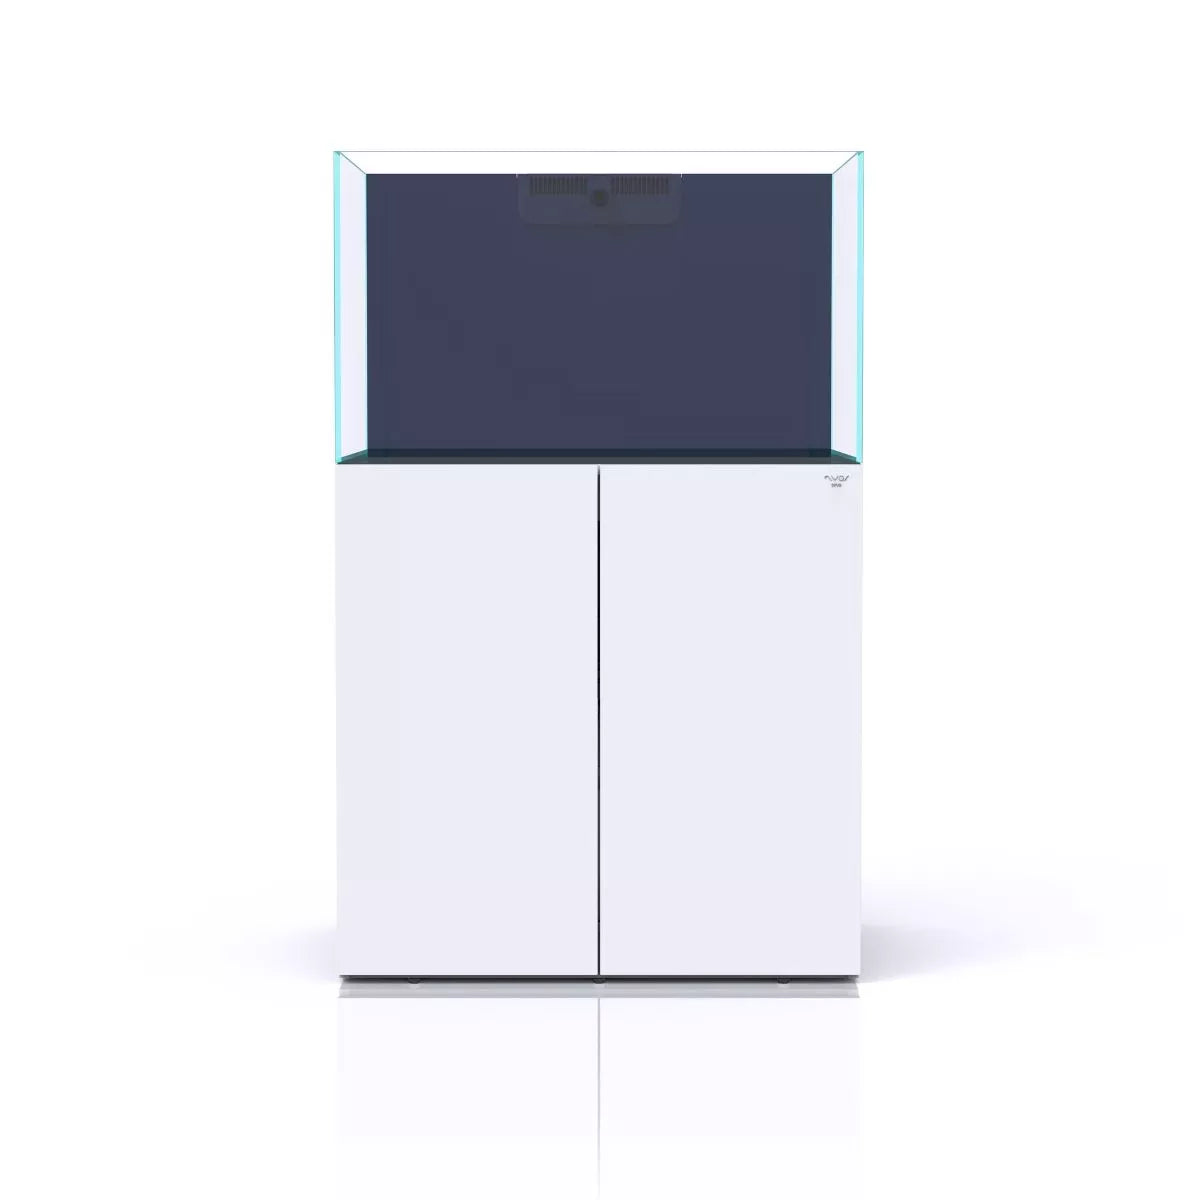 Nyos OPUS G2 300 Aquarium w/ Slim-Line Cabinet (White)